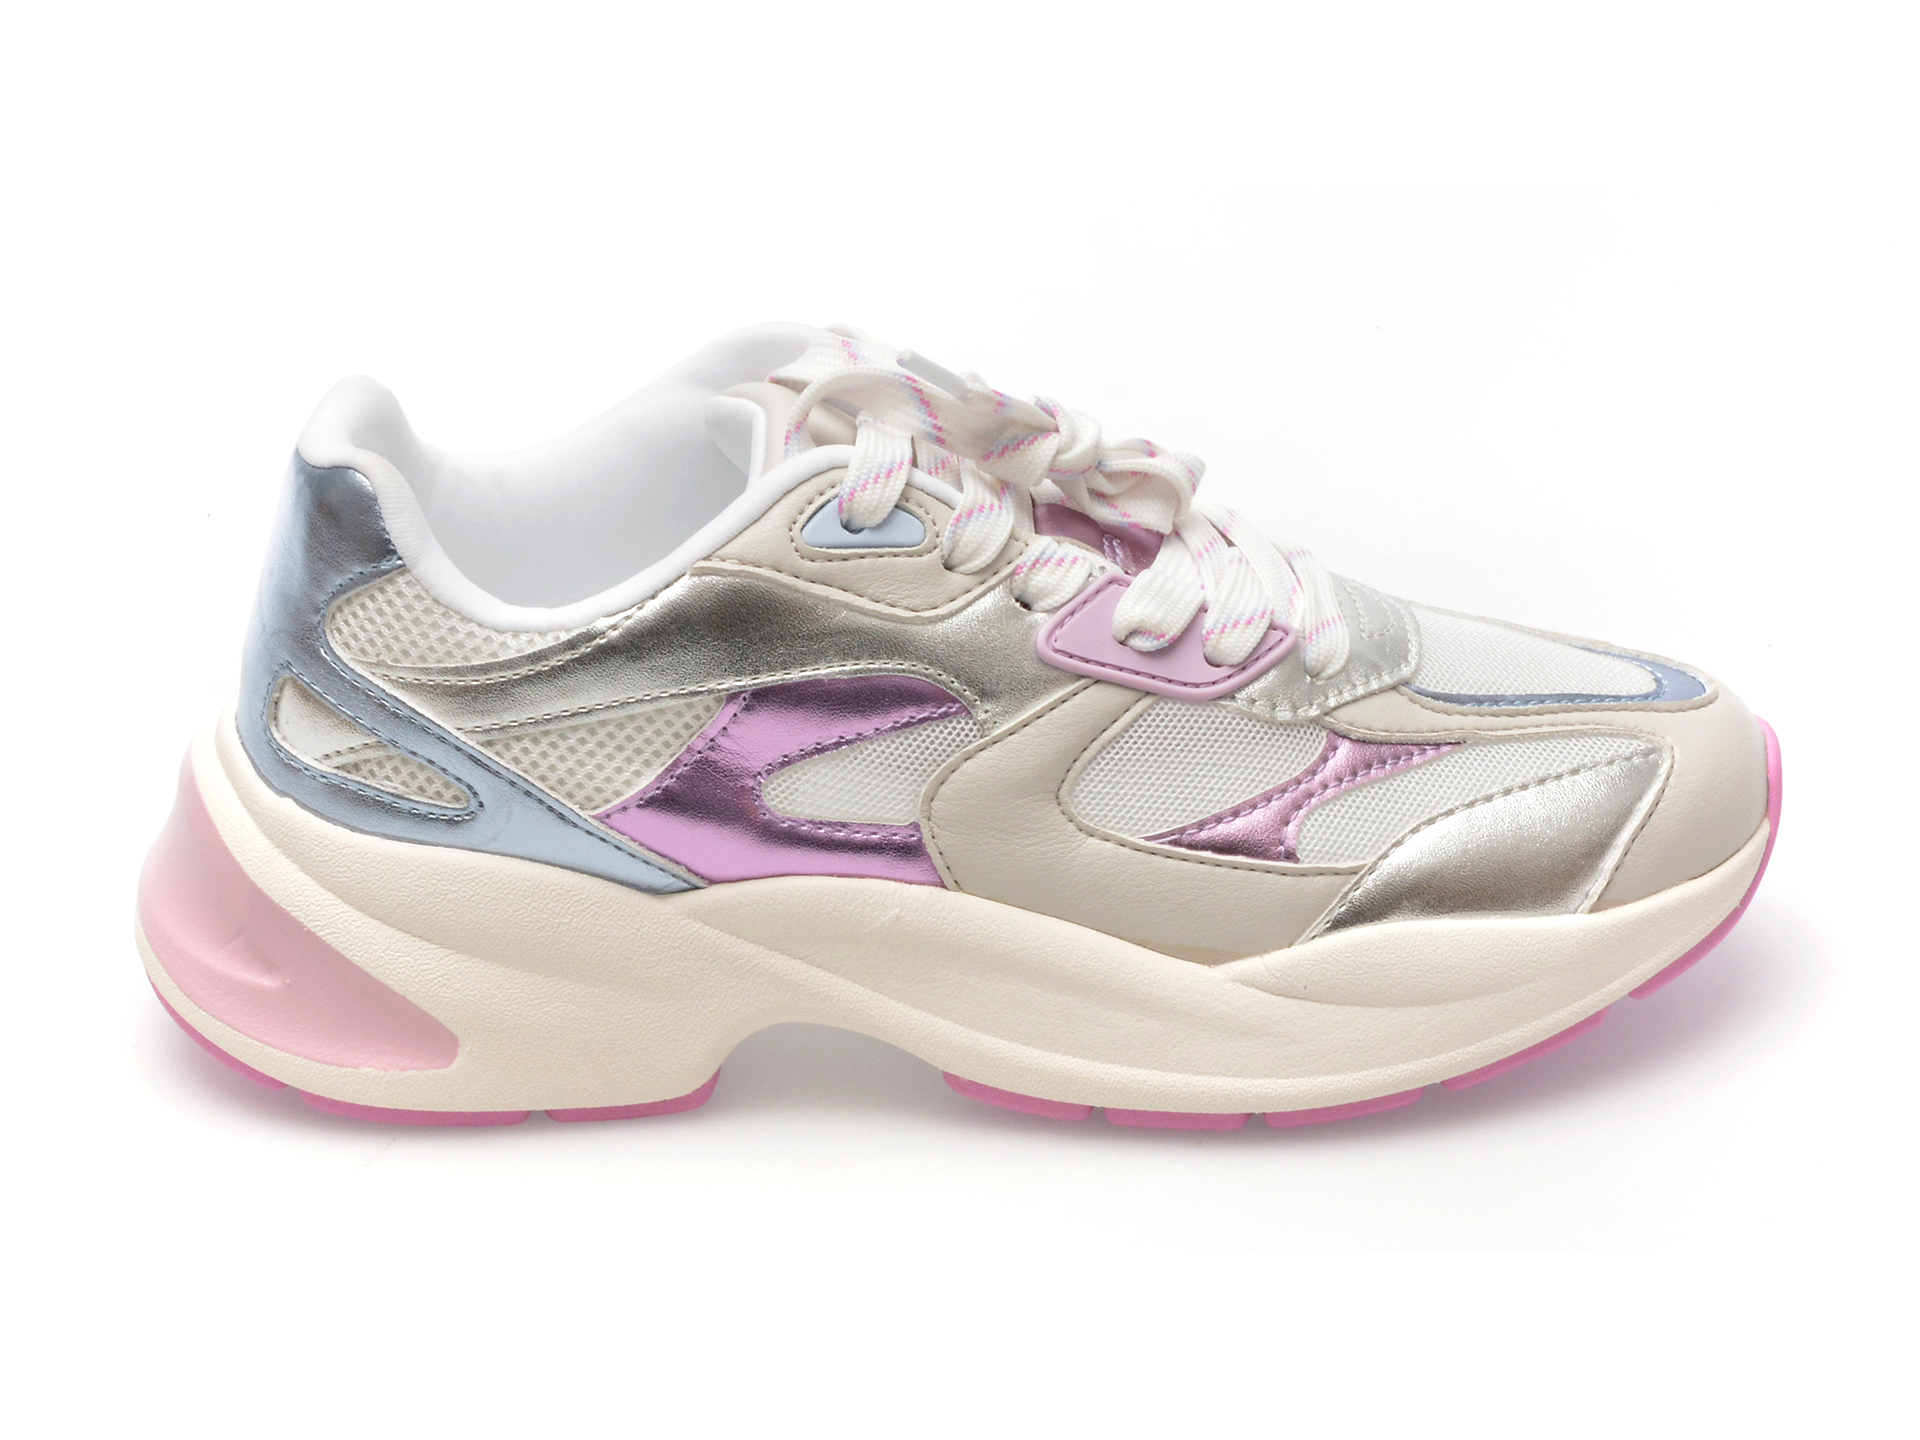 Pantofi sport ALDO argintii, MAYANA042, din piele ecologica